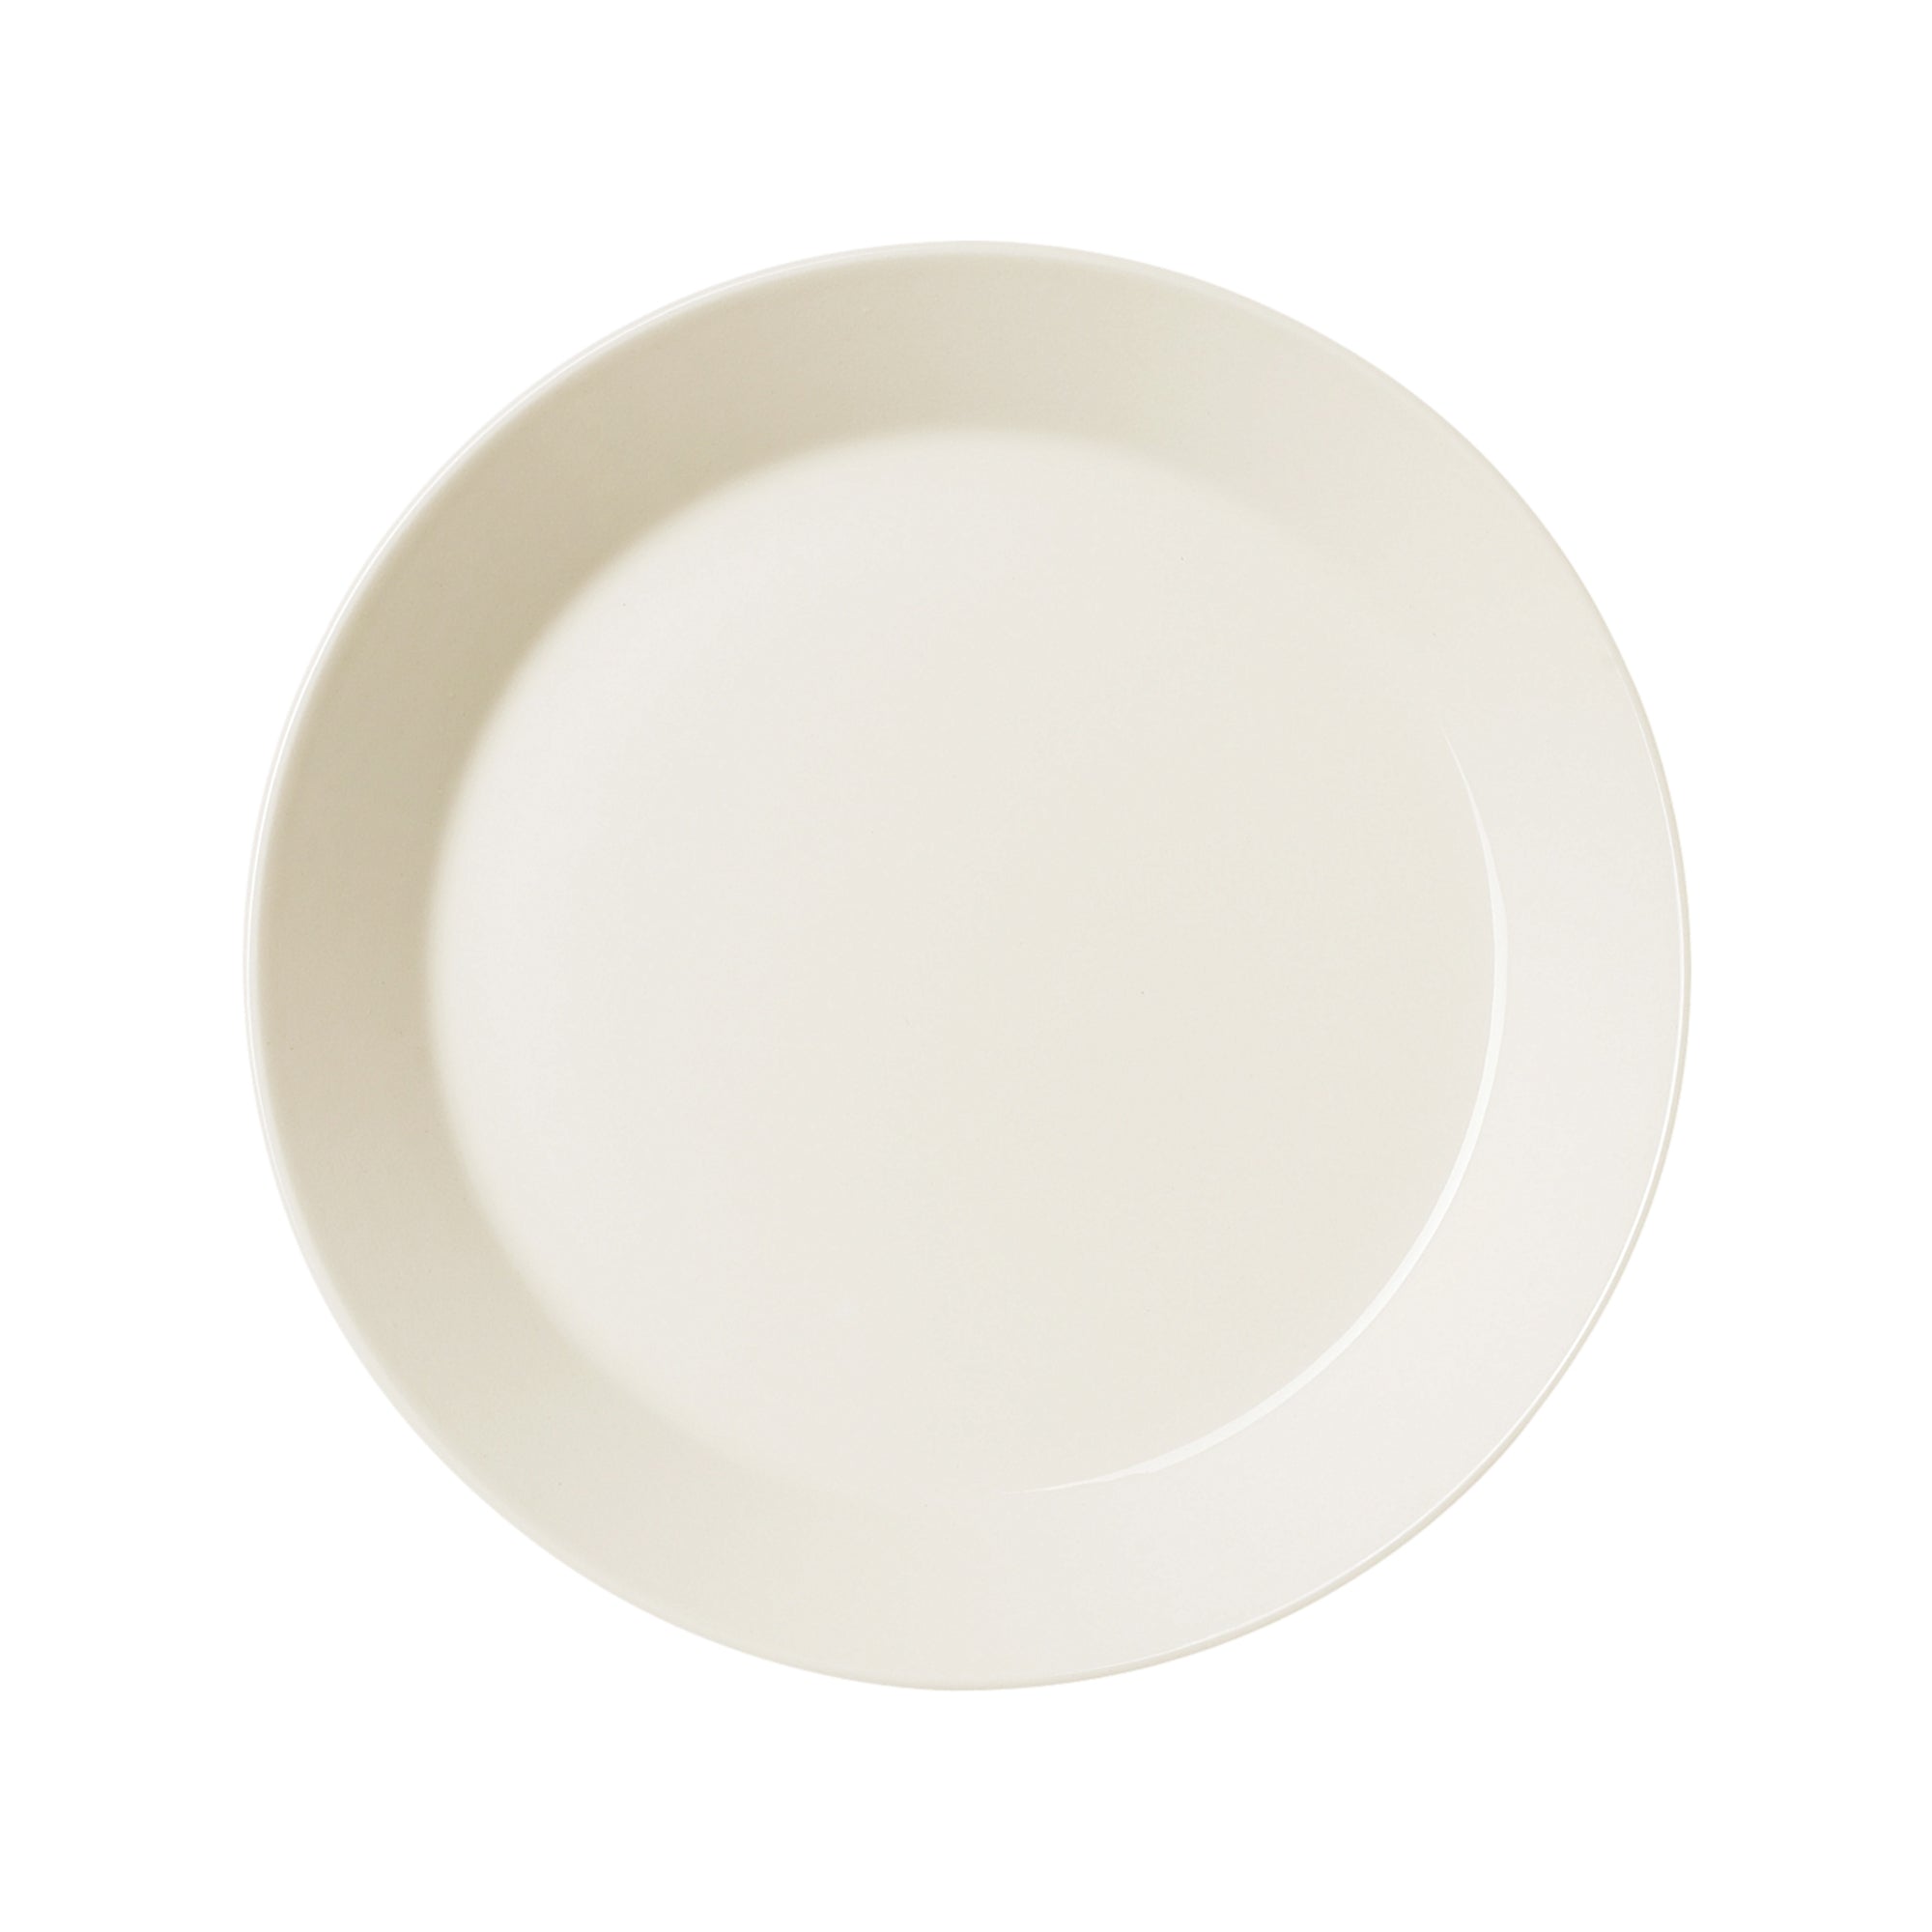 Teema plate 21 cm Salad plate 8.5"